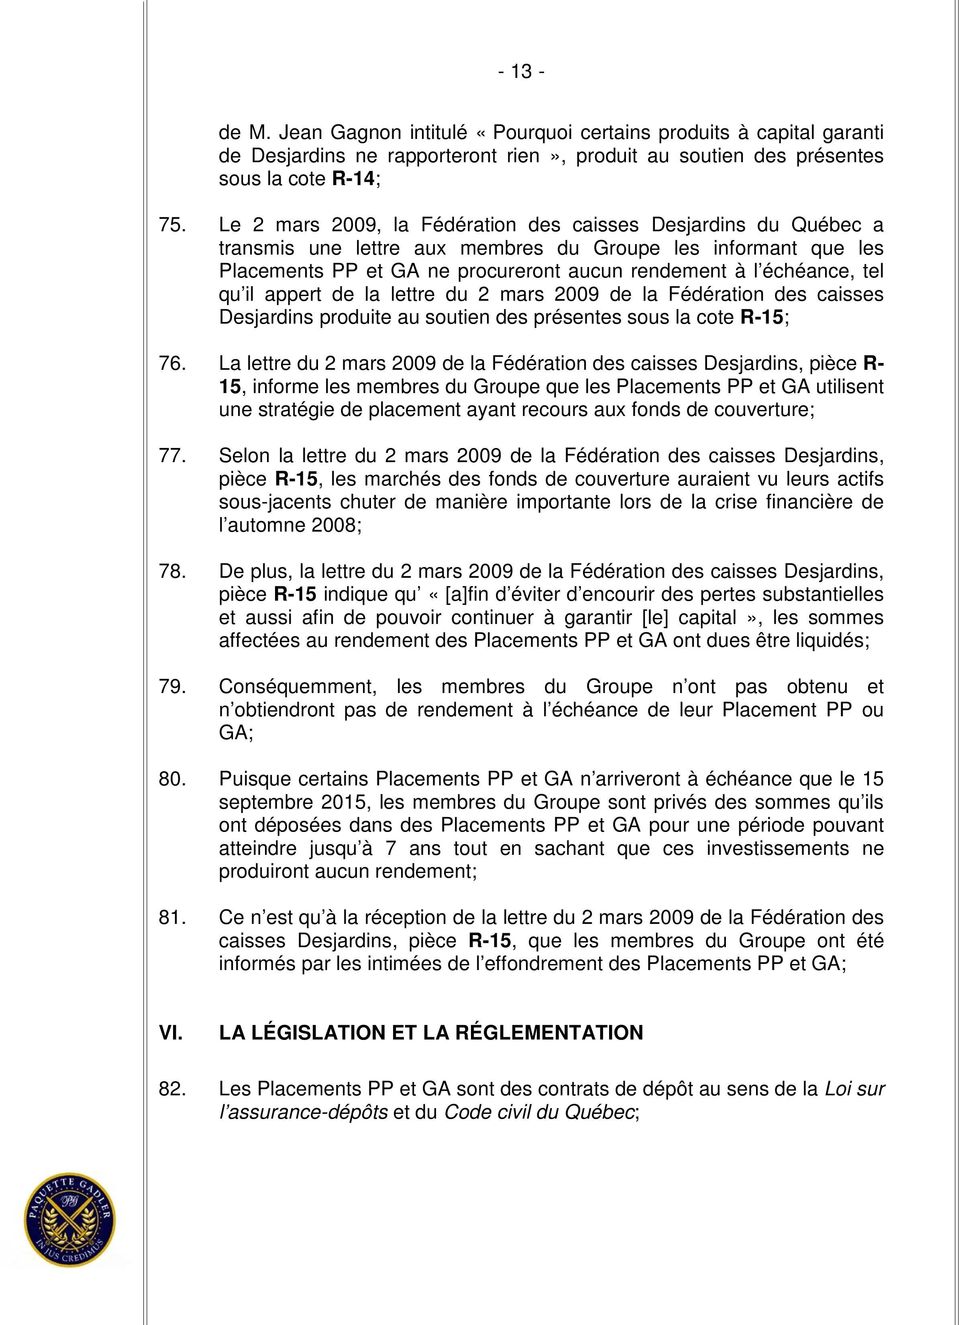 qu il appert de la lettre du 2 mars 2009 de la Fédération des caisses Desjardins produite au soutien des présentes sous la cote R-15; 76.